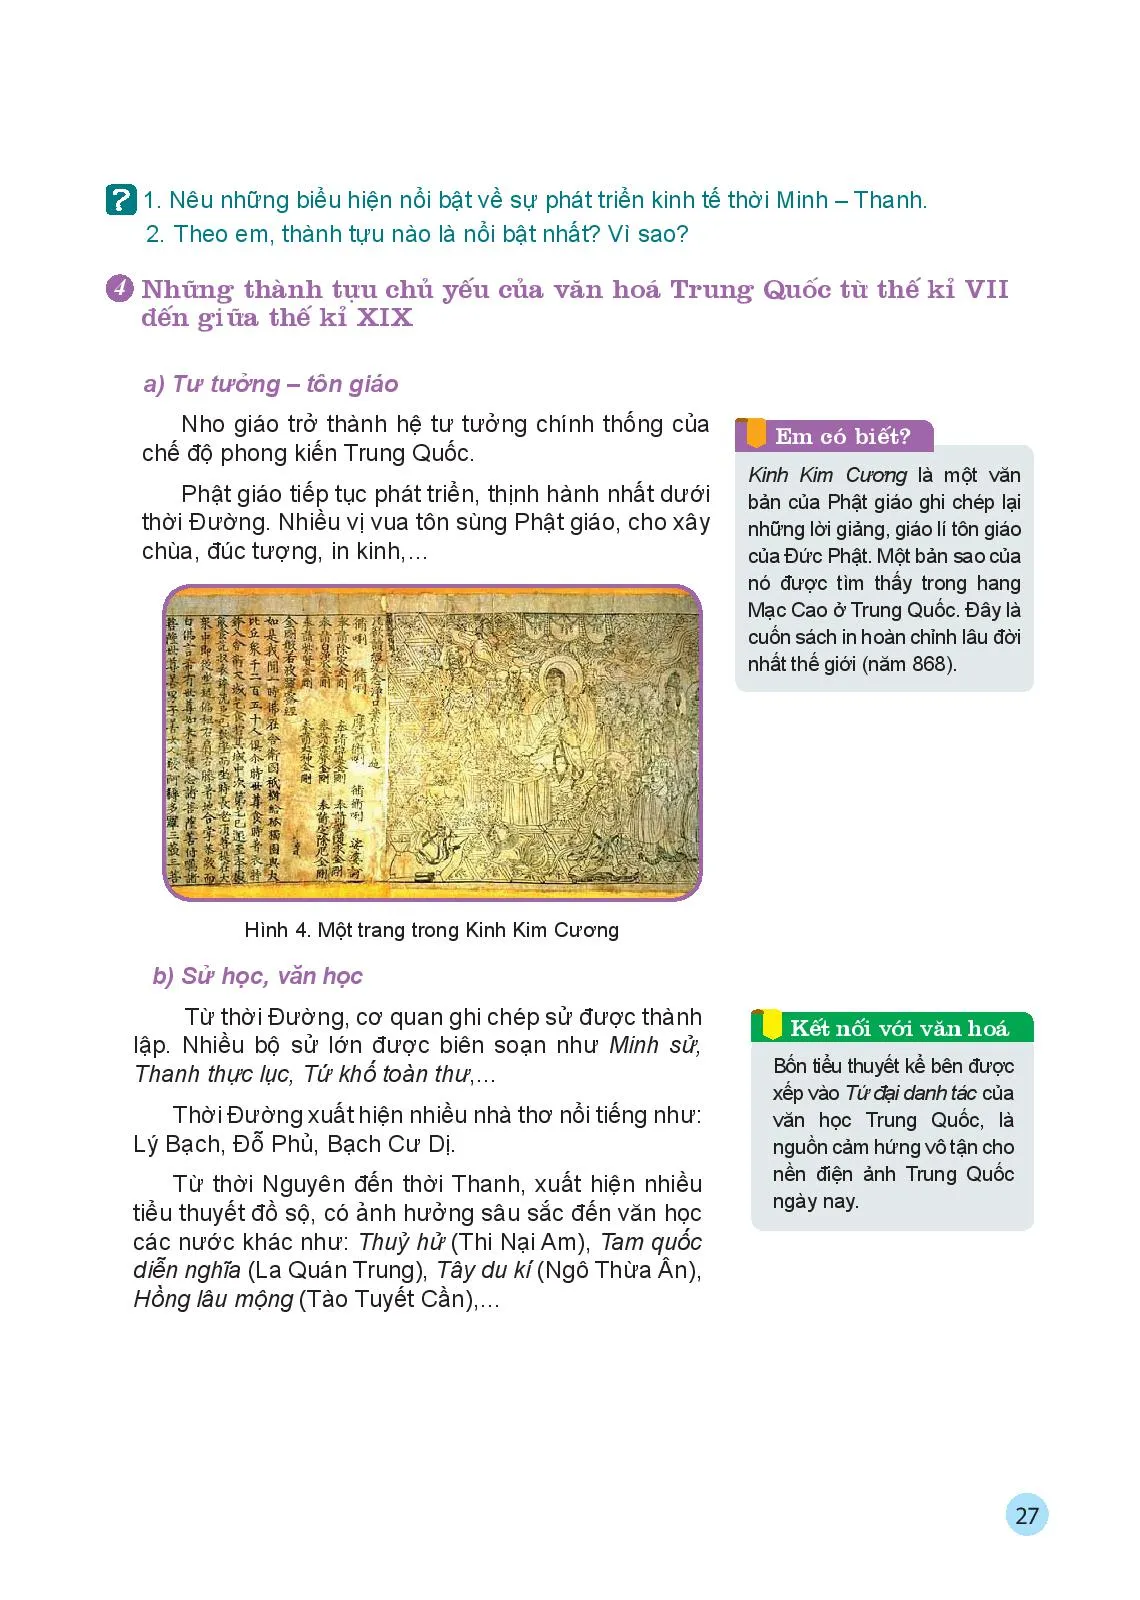 Bài 4 Trung Quốc từ thế kỉ VII đến giữa thế kỉ XIX